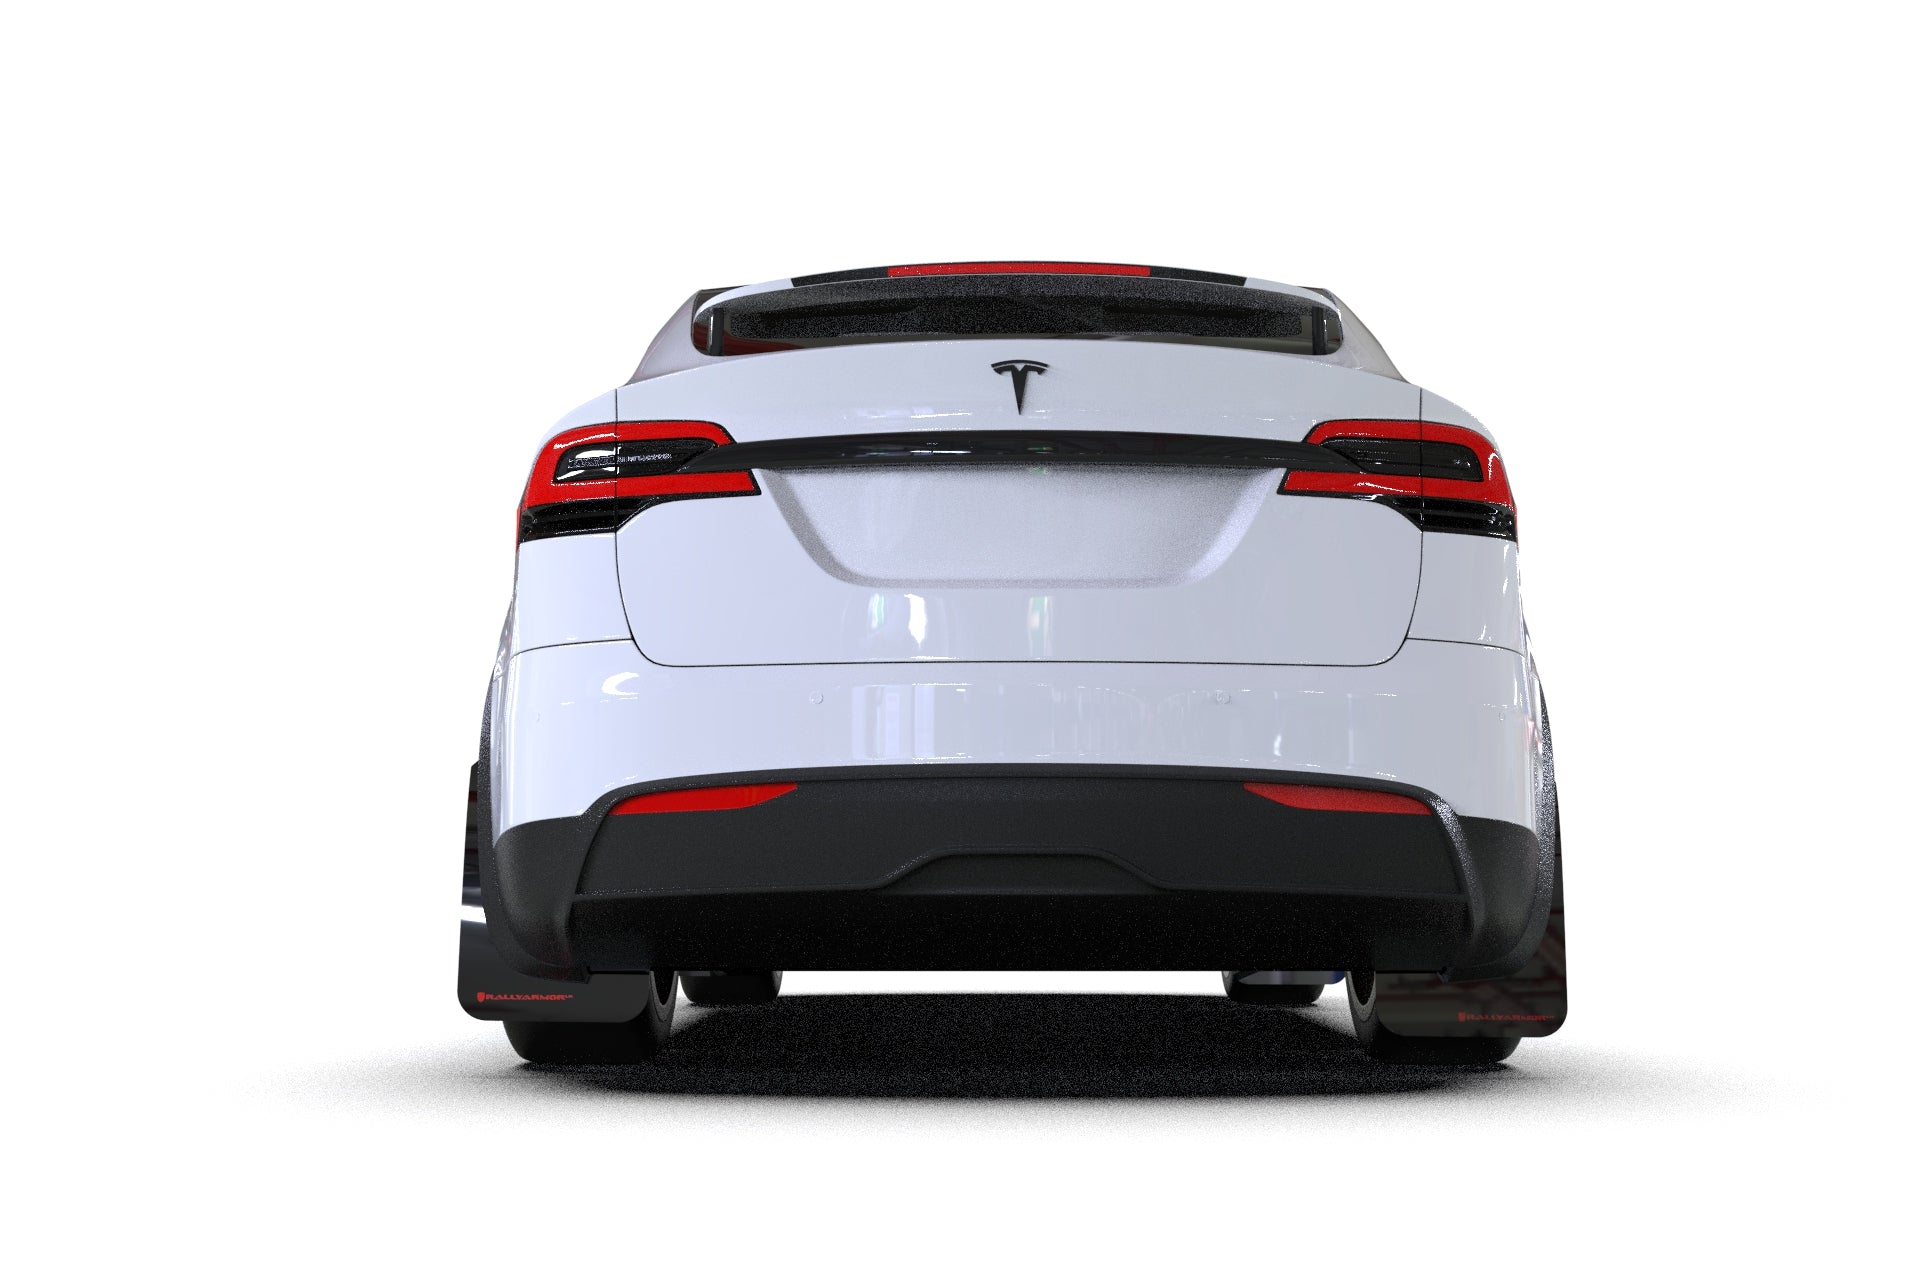 Pare-boue Rally Armor - Tesla Model X – Martian Wheels